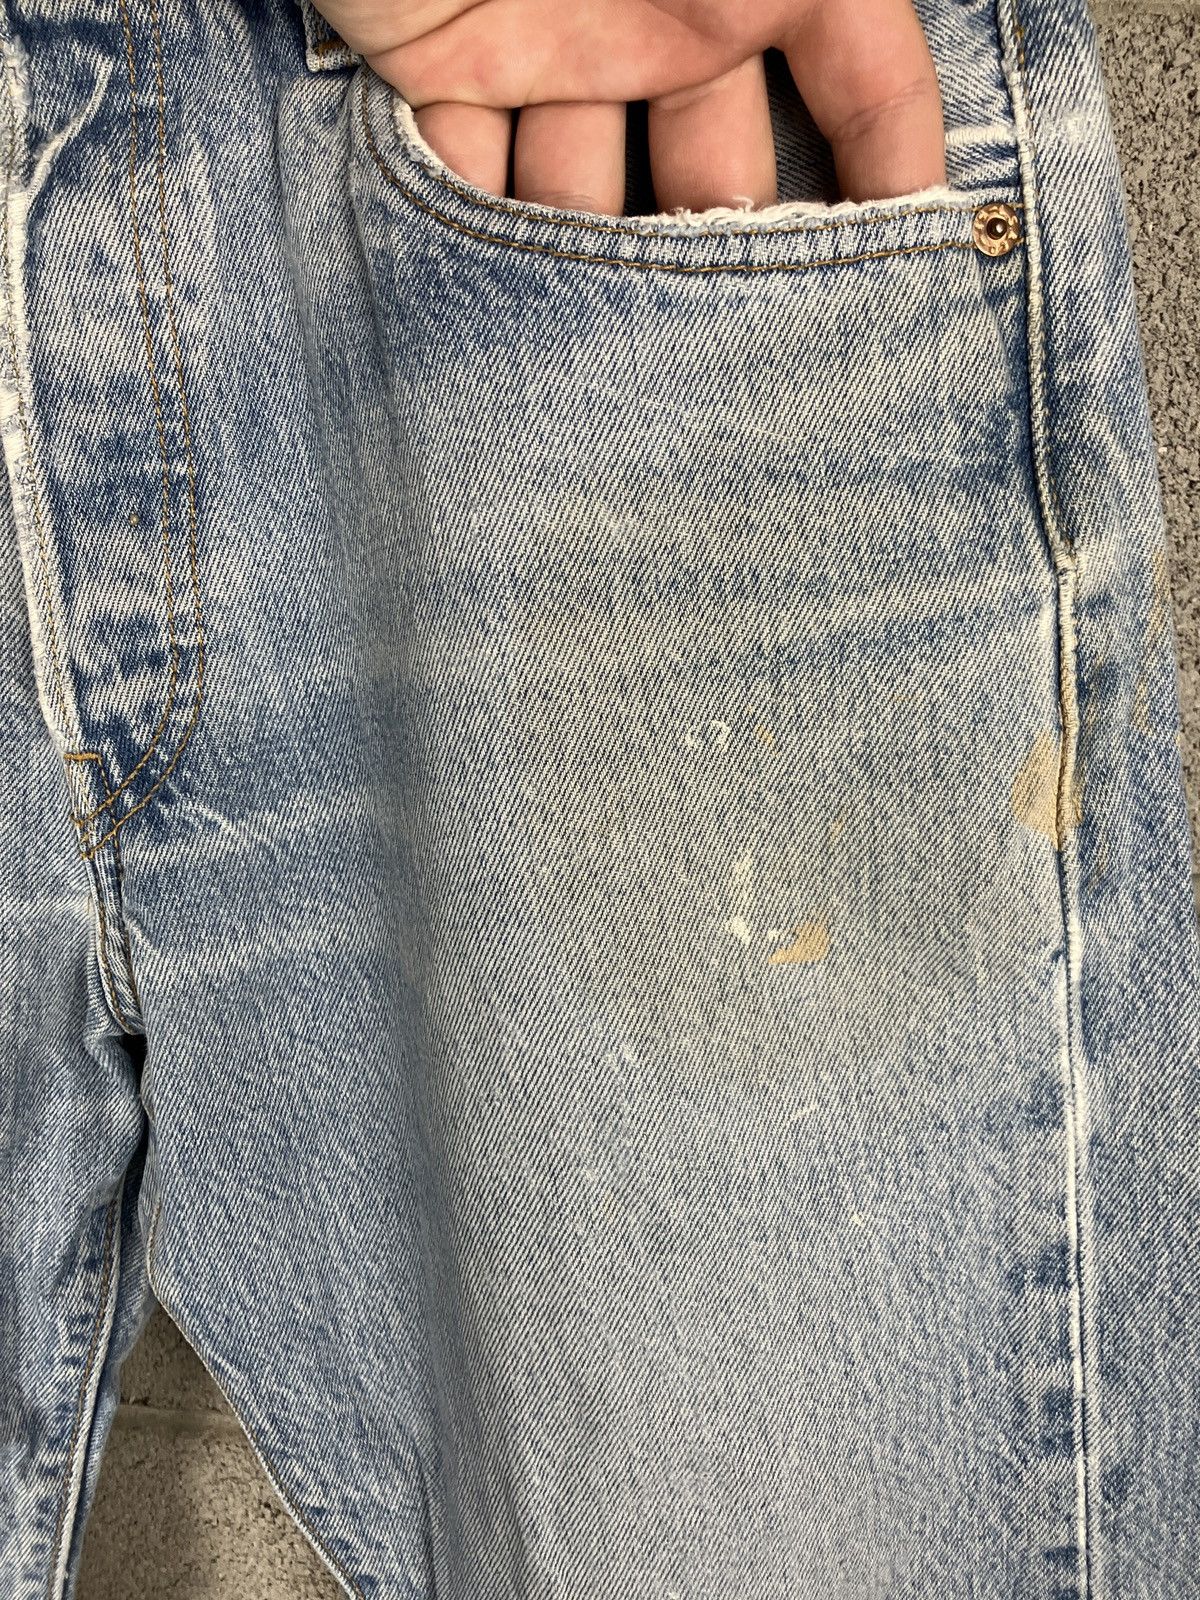 Vintage Vintage Levi’s 501 Distressed Painted Jeans 33 x 29 Size US 33 - 5 Thumbnail